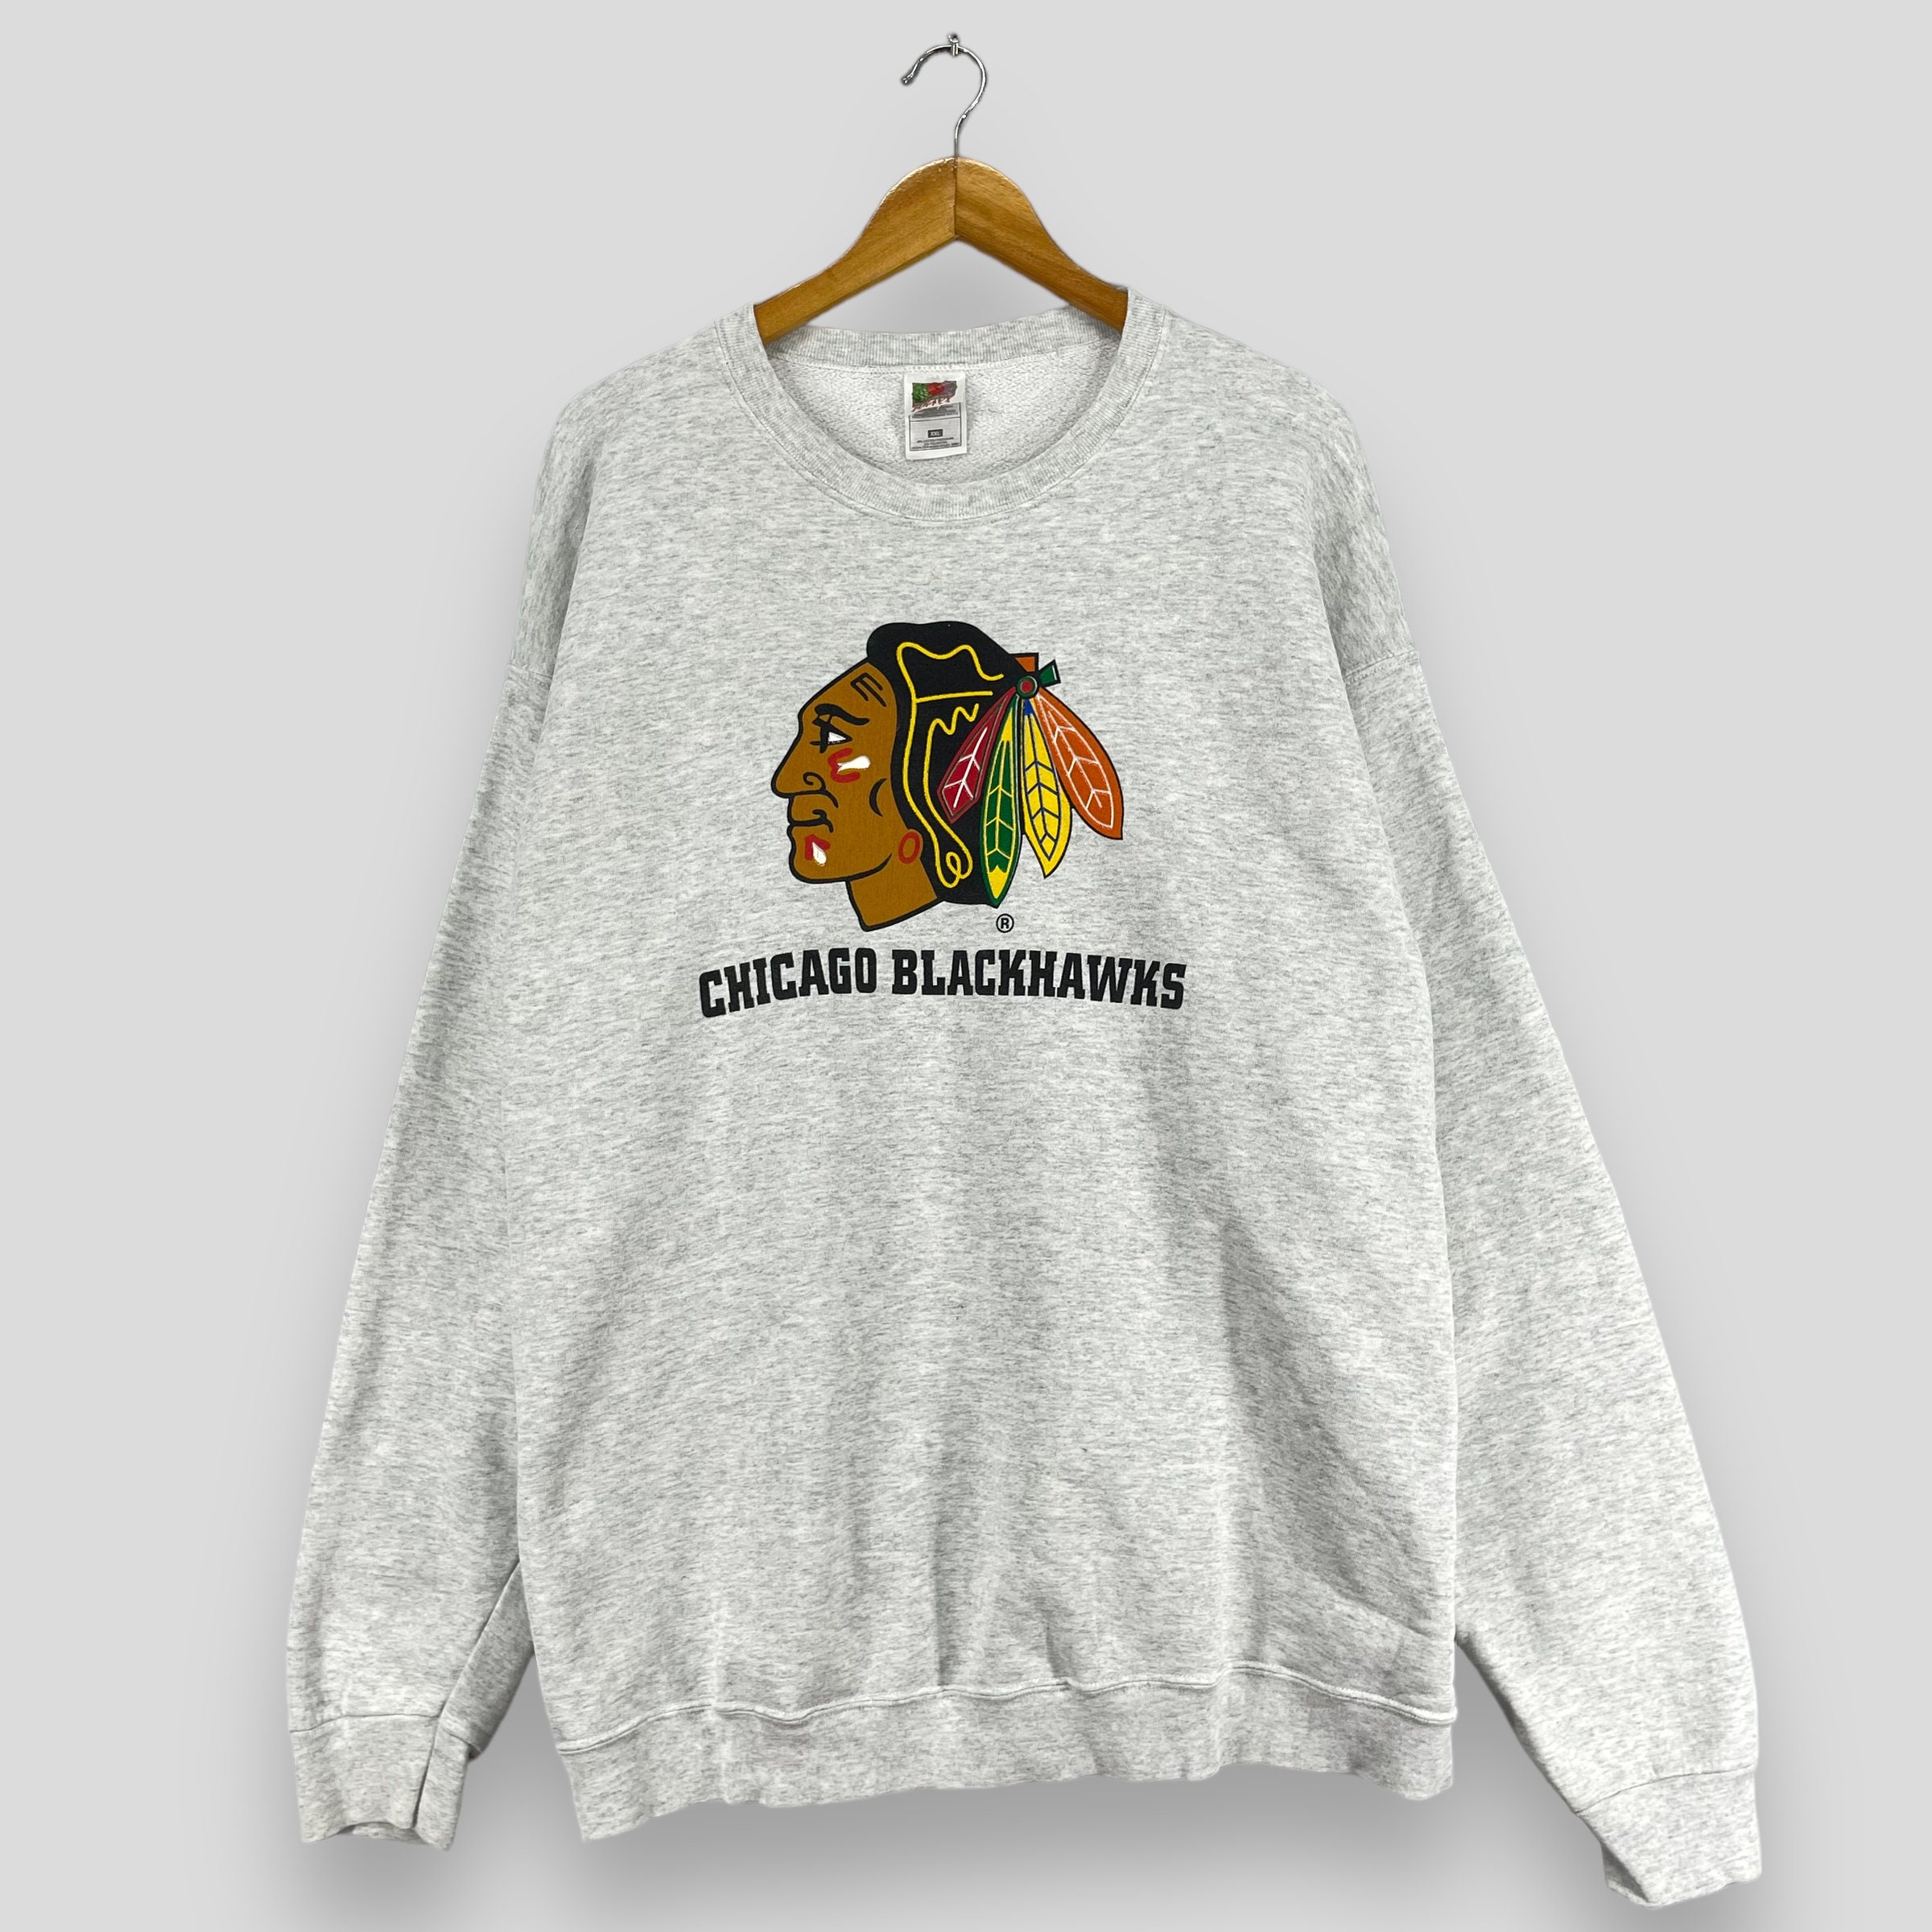 Vintage New York Islanders Lee Sport Sweatshirt Men's Large Gray Pullover  NHL